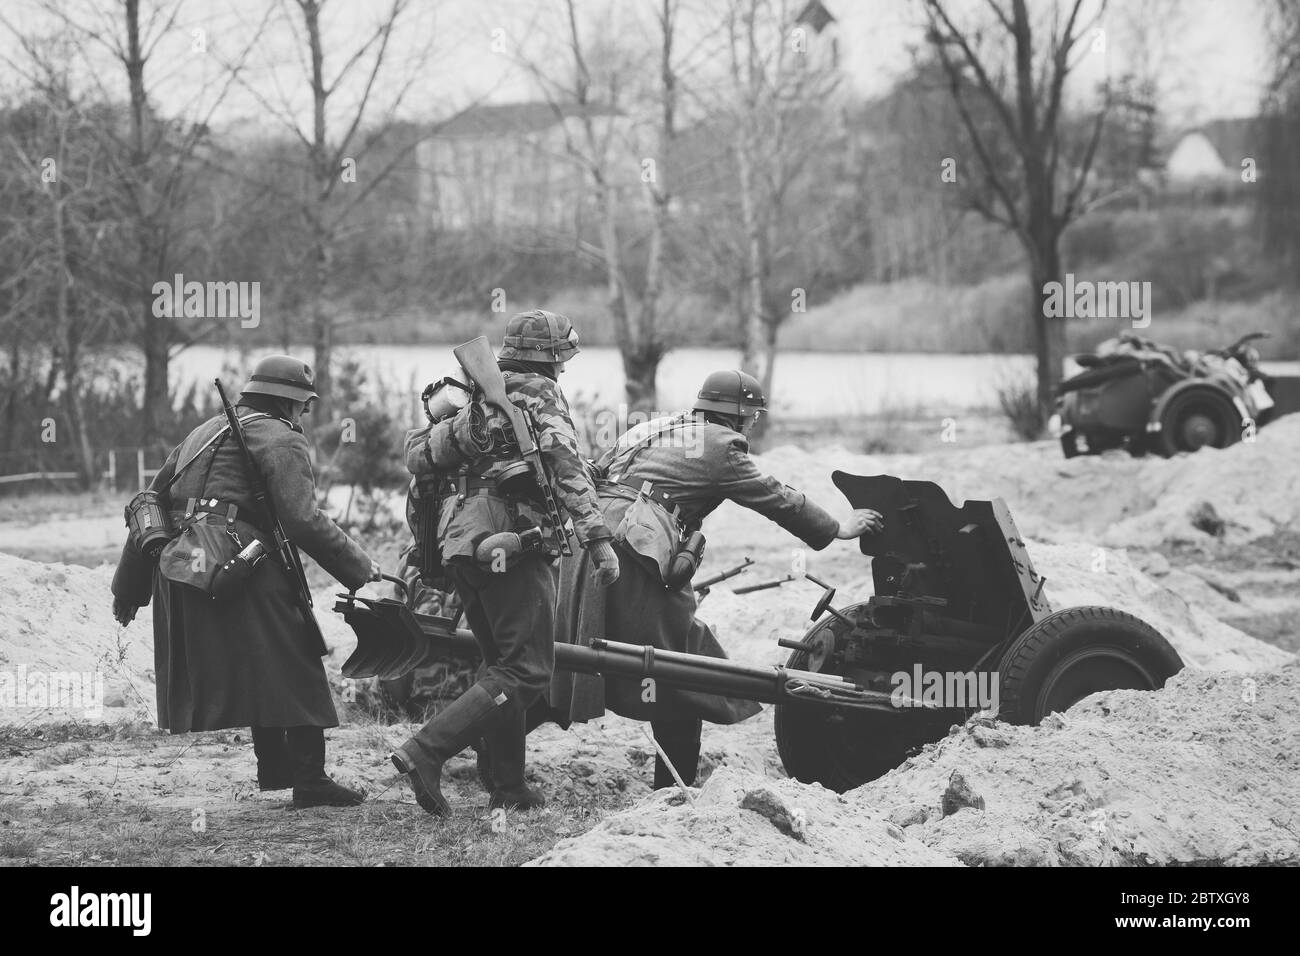 Des réacteurs vêtus de soldats allemands lors de la Seconde Guerre mondiale, AreRoll Out Cannon en position de tir Banque D'Images